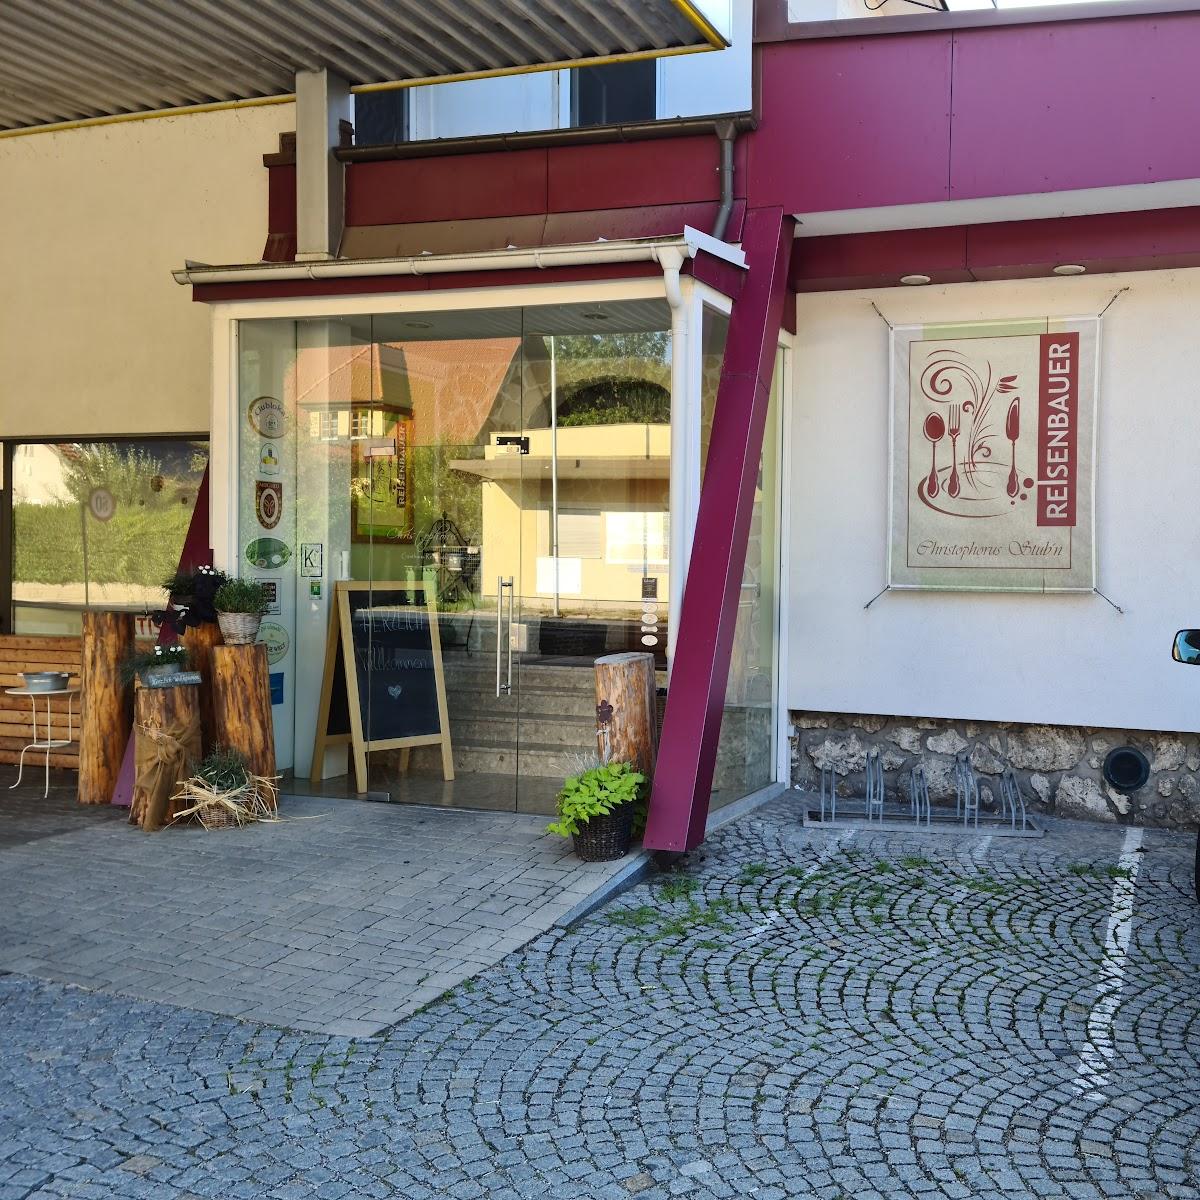 Restaurant "Gasthaus Restaurant Reisenbauer" in Scheiblingkirchen